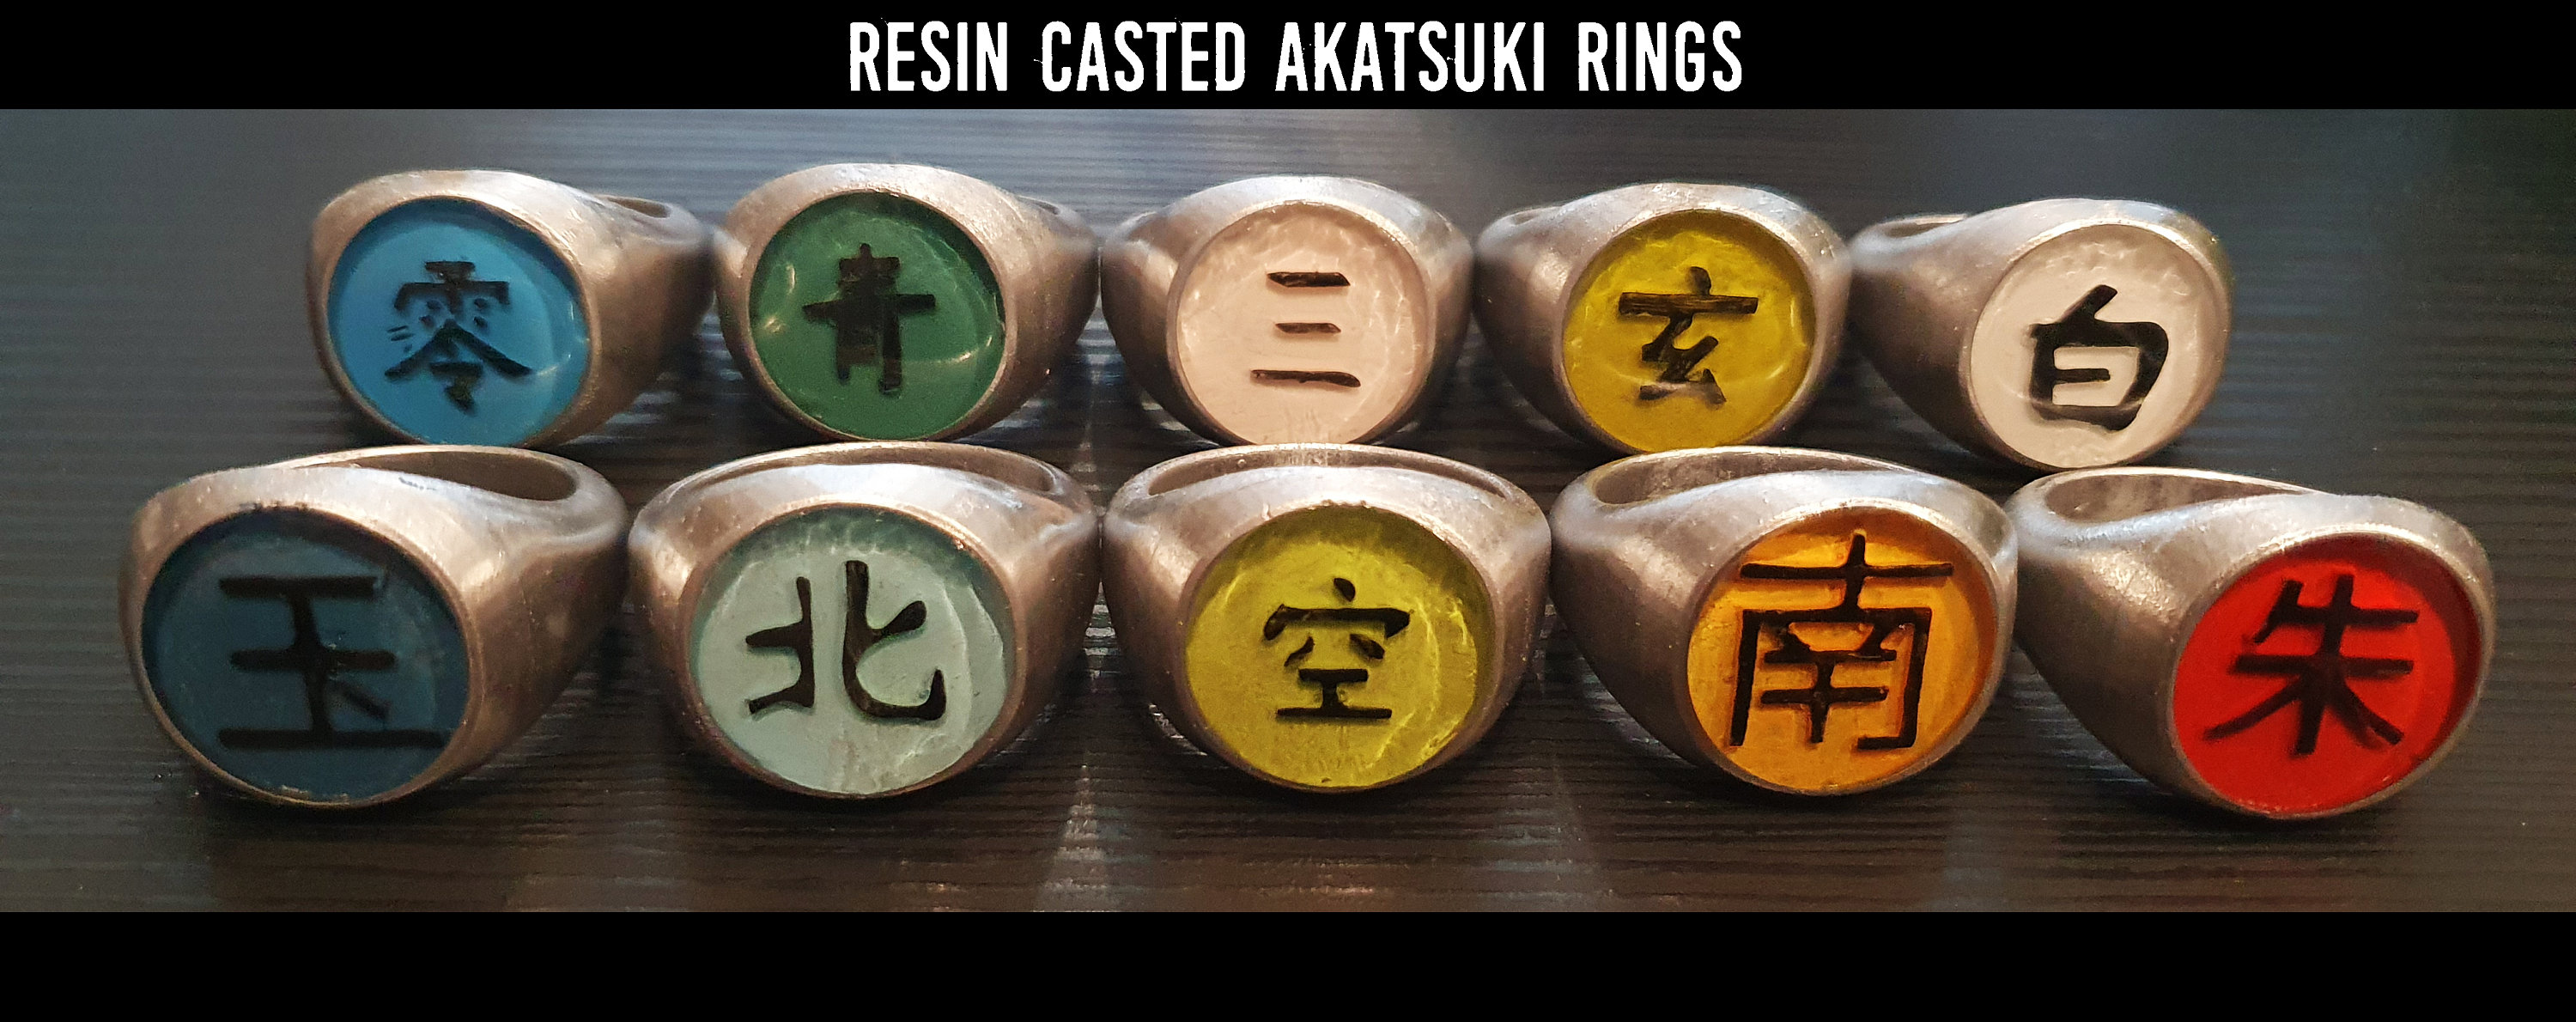 akatsuki ring - Compre akatsuki ring com envio grátis no